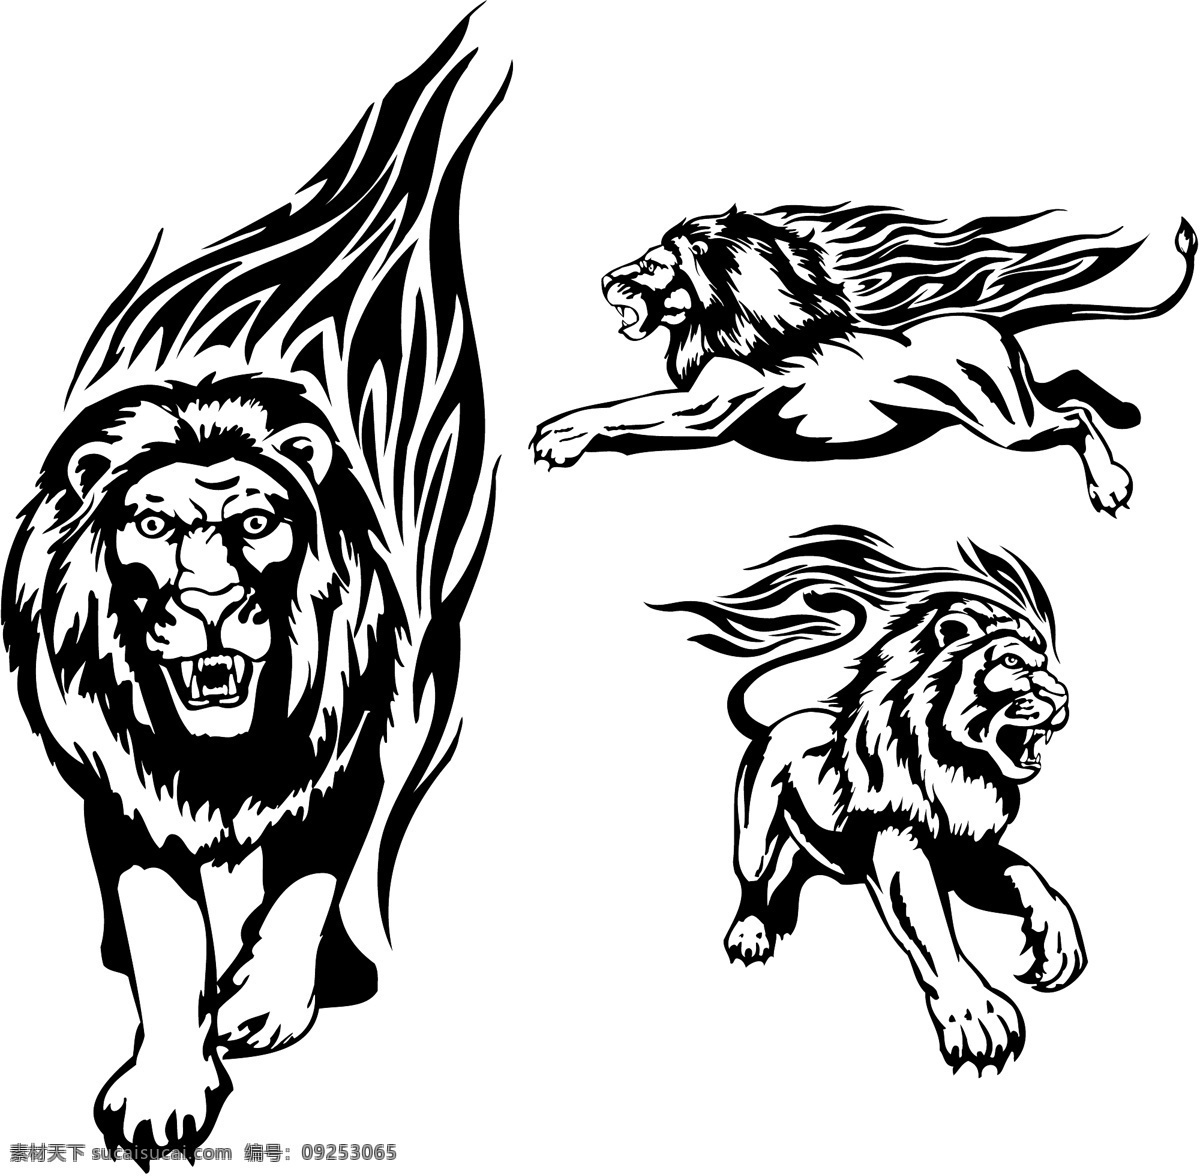 火焰 狮 图腾 矢量 动物 狮子 纹身 向量的火焰 矢量图